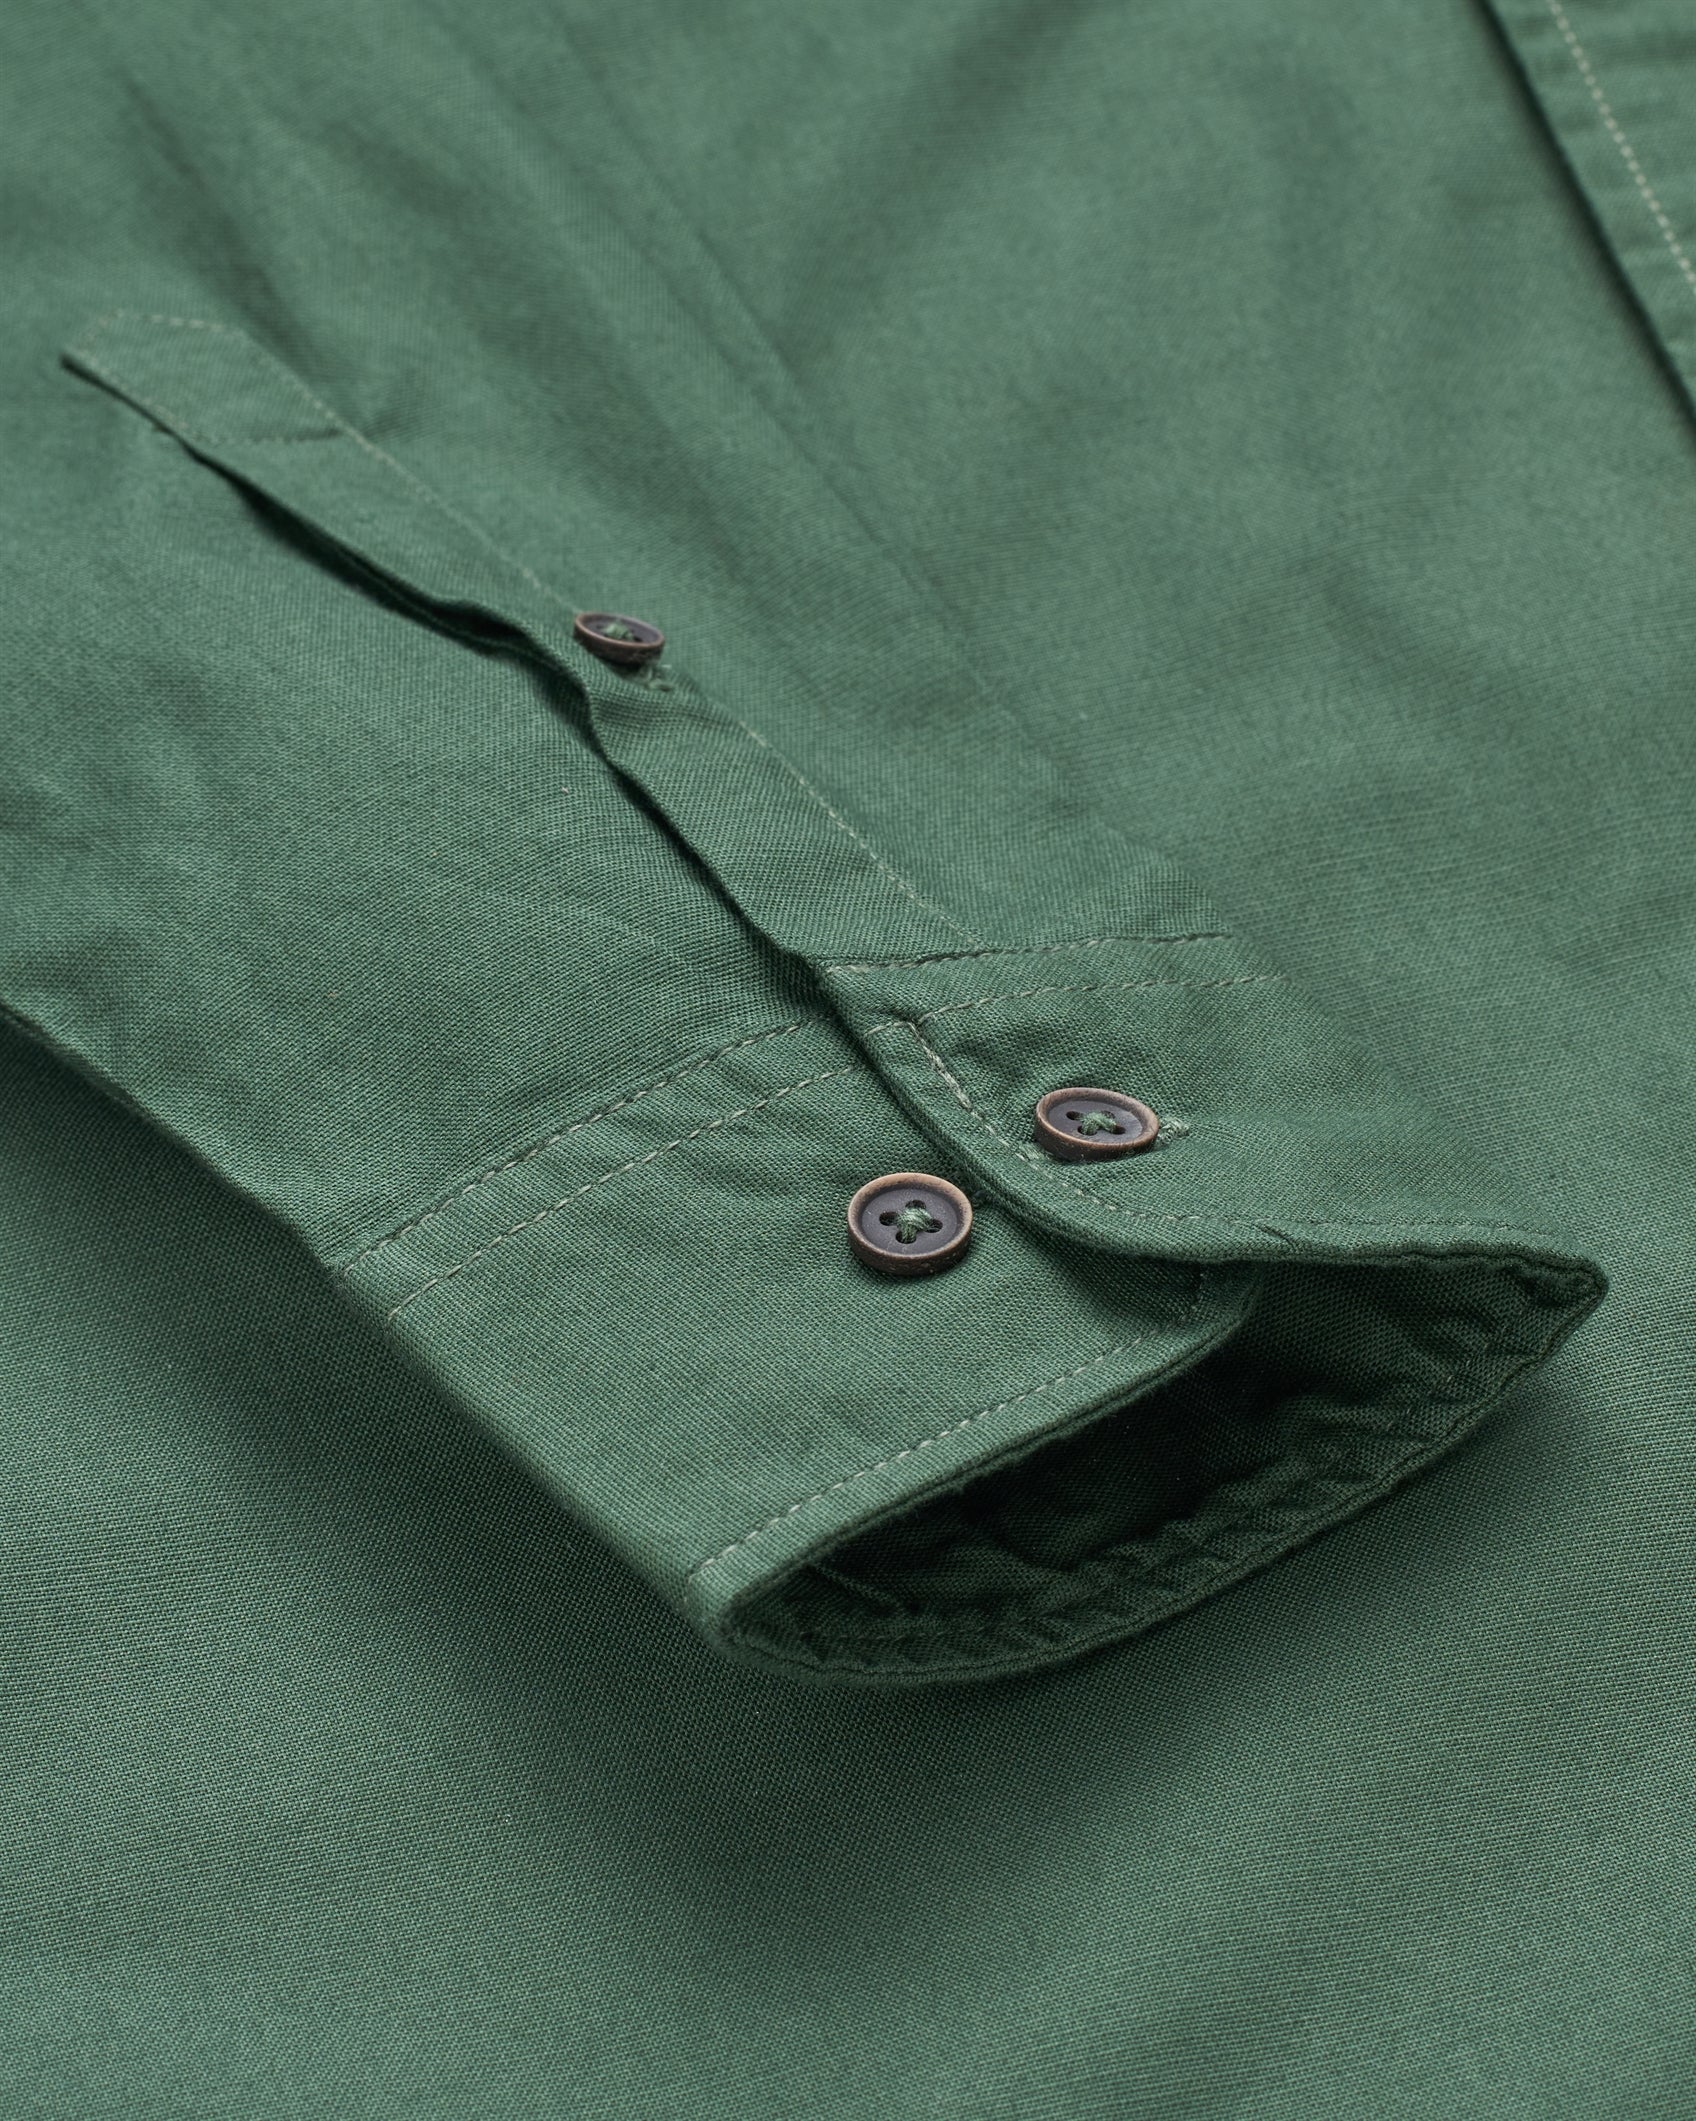 Bare Brown - Dark Green Stretch Cotton Shirt, Slim Fit